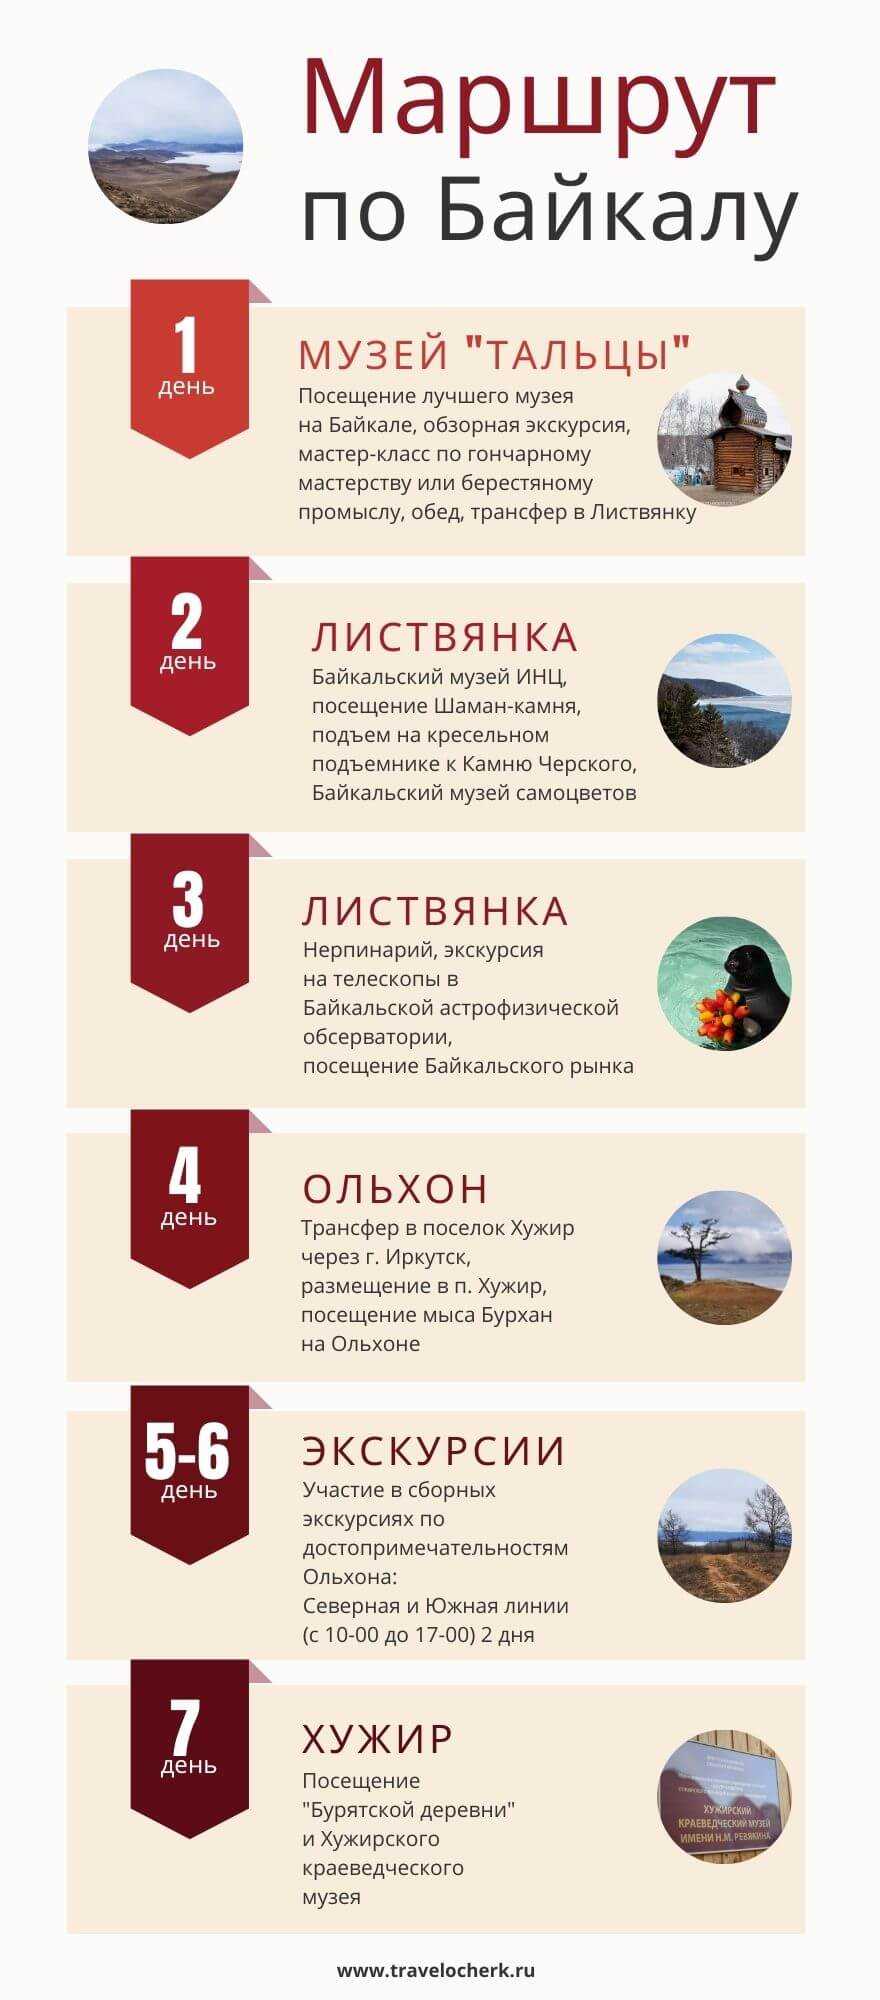 Проект тура по Байкалу для учащихся 9 классов